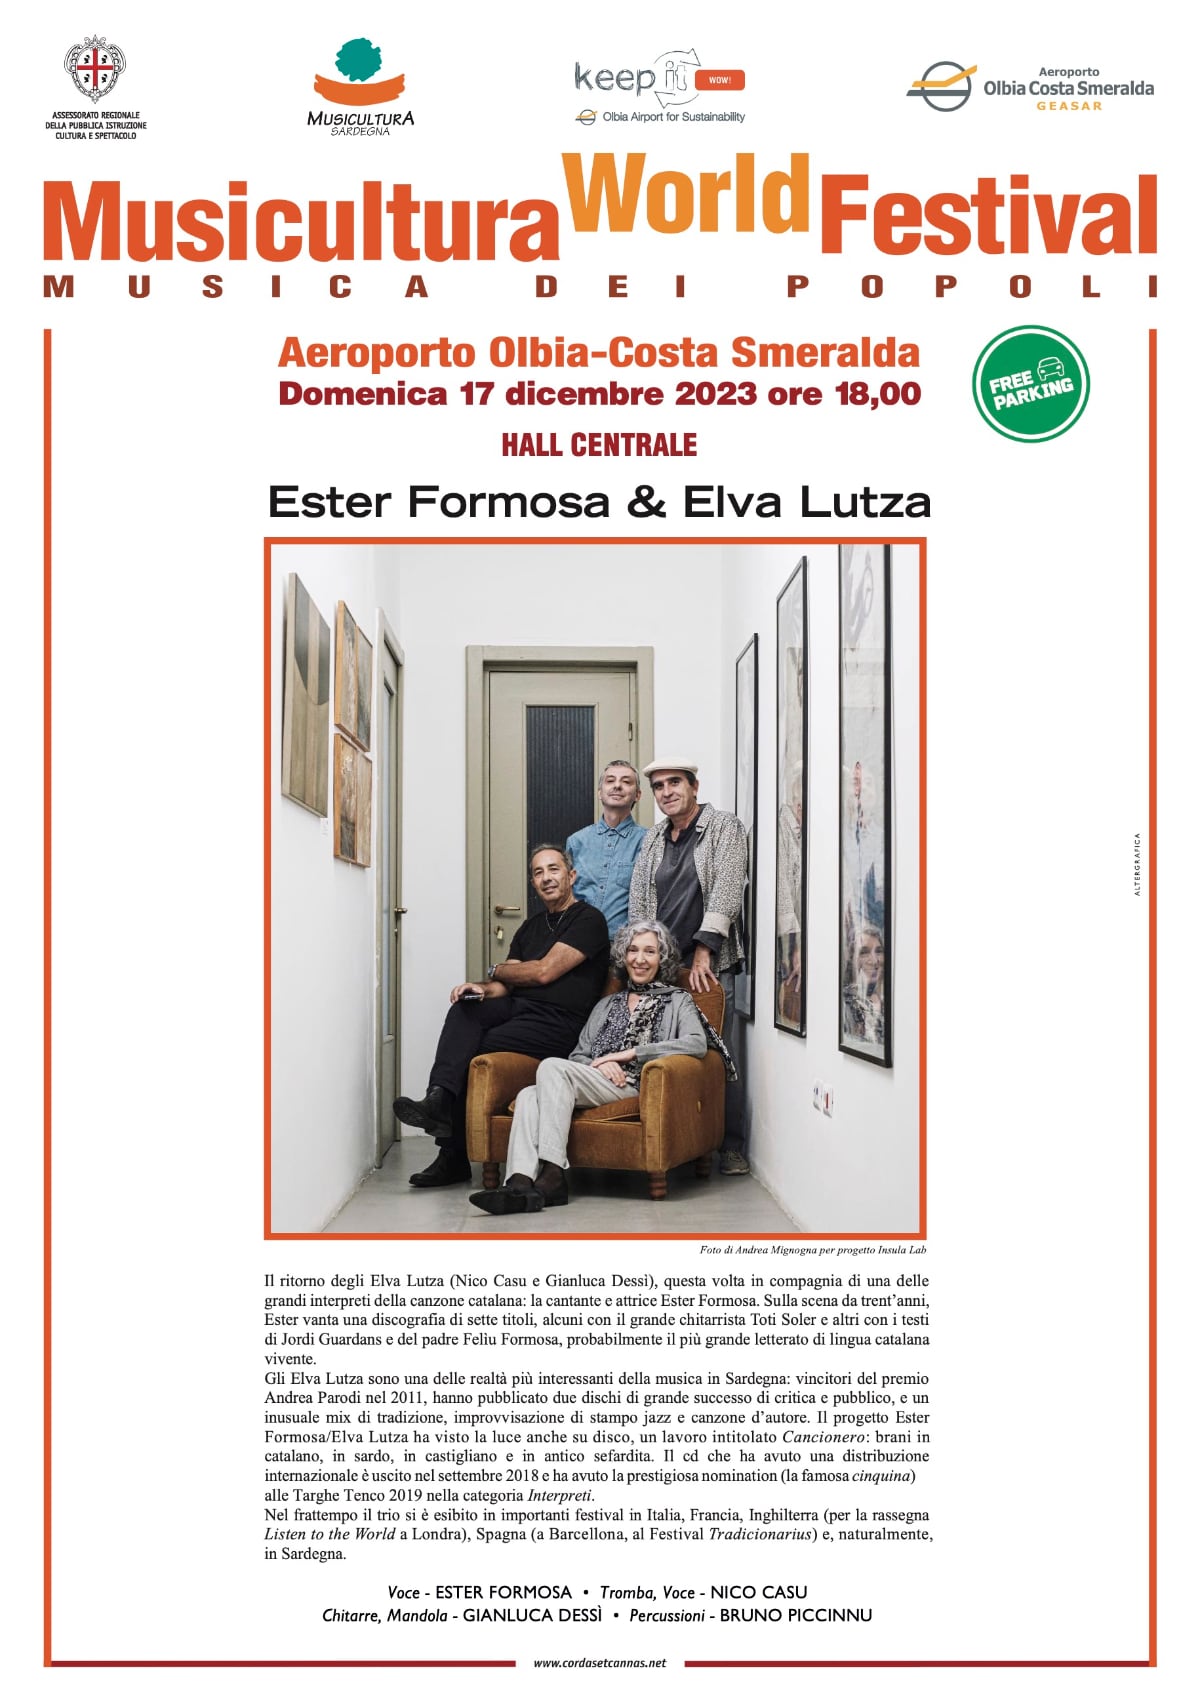 Locandina per il concerto di Elva Lutza, Ester Formosa e Bruno Piccinnu all'aeroporto di Olbia